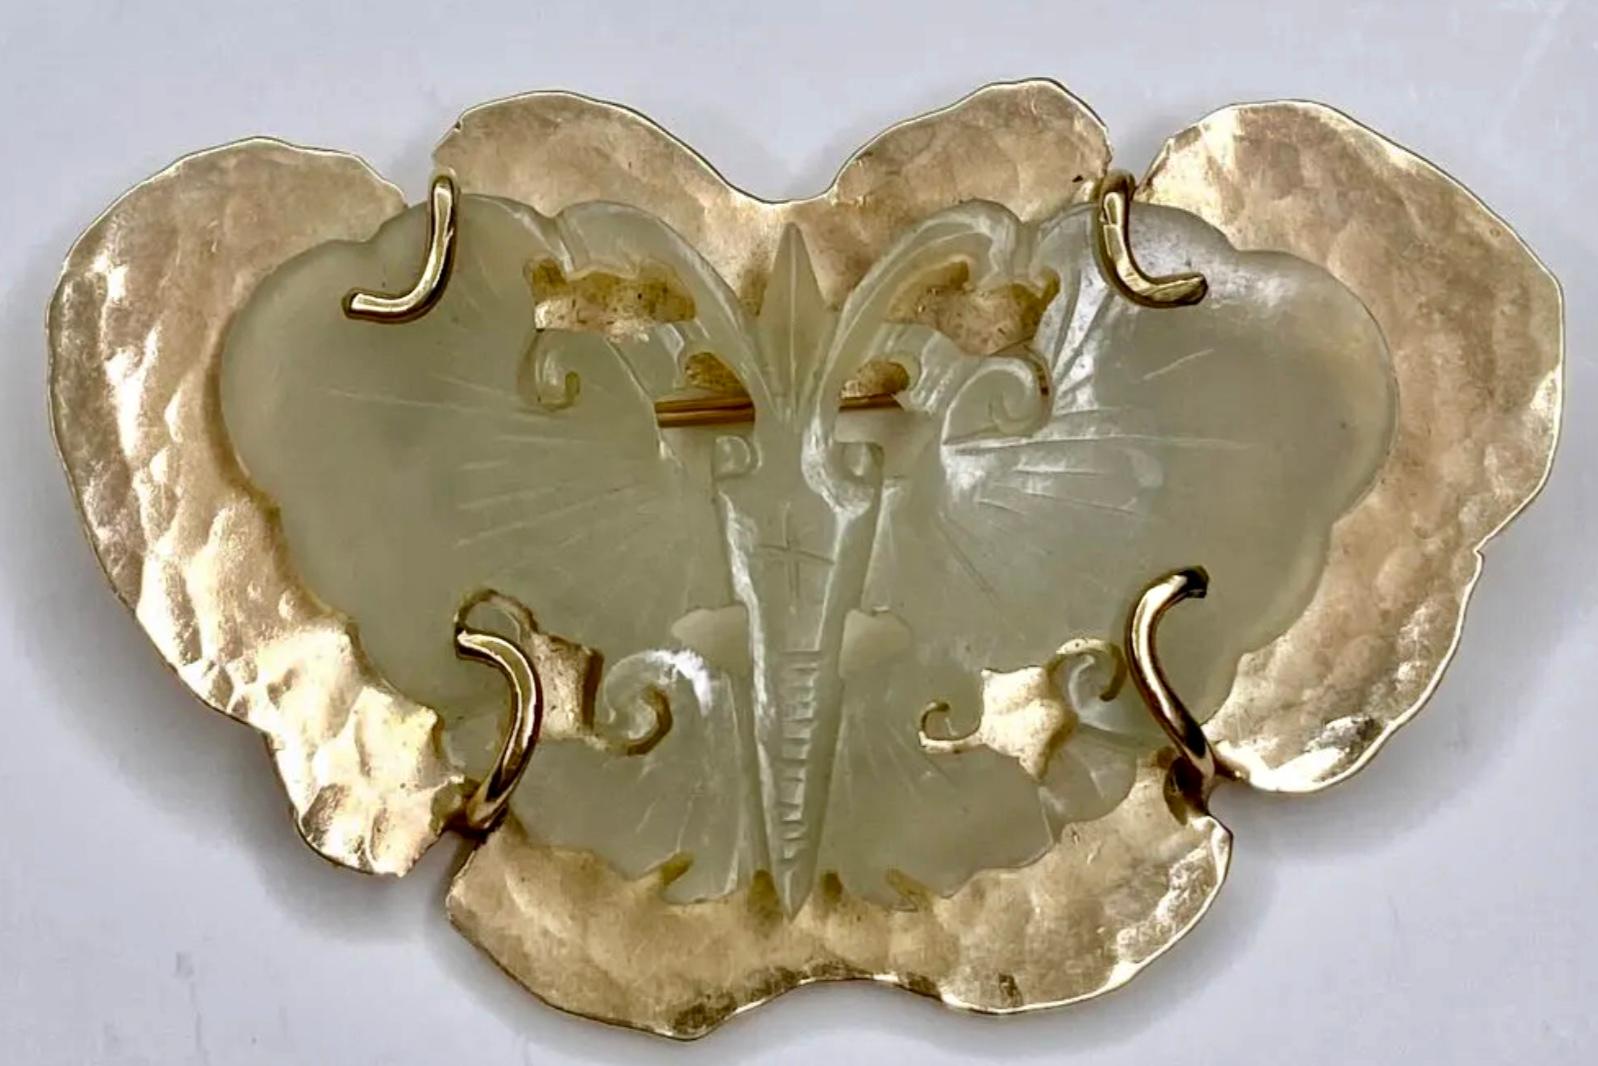 14K Yellow Gold Celadon Jade Butterfly Brooch. Celadon jade and 14K gold butterfly brooch, 10.8 grams. Dimensions: 2